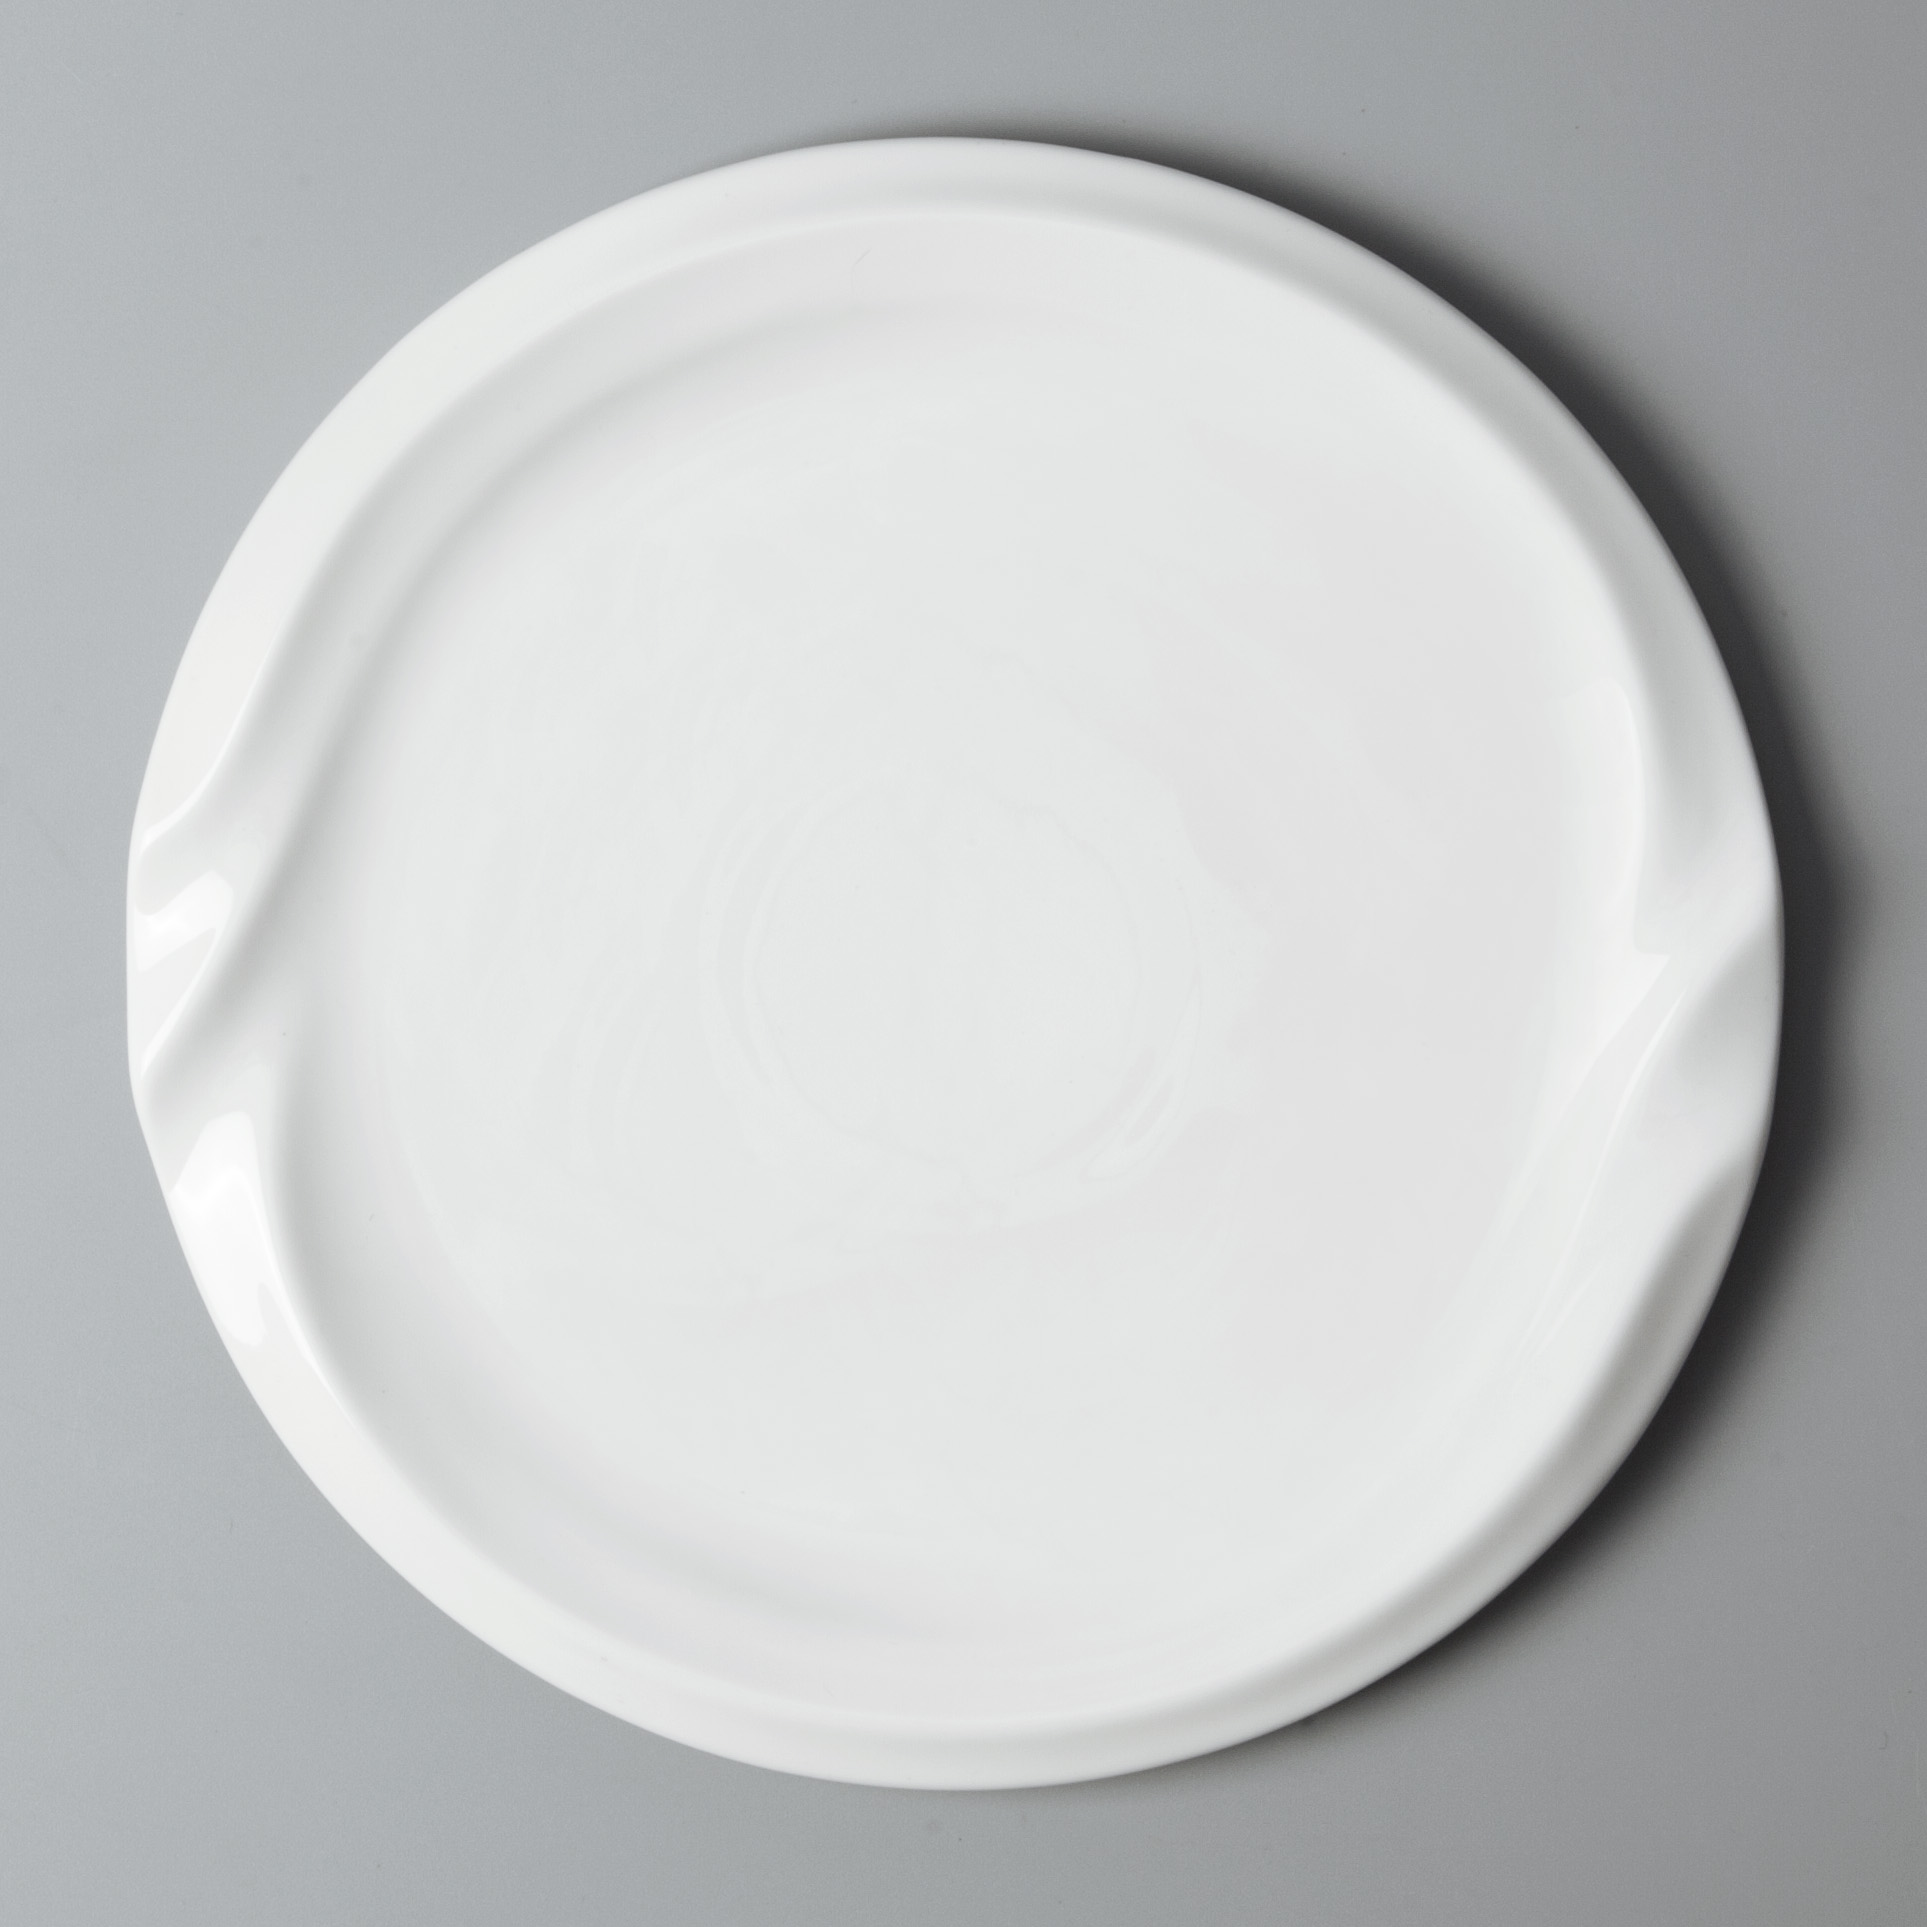 High-quality custom restaurant plates for business for dinner-11